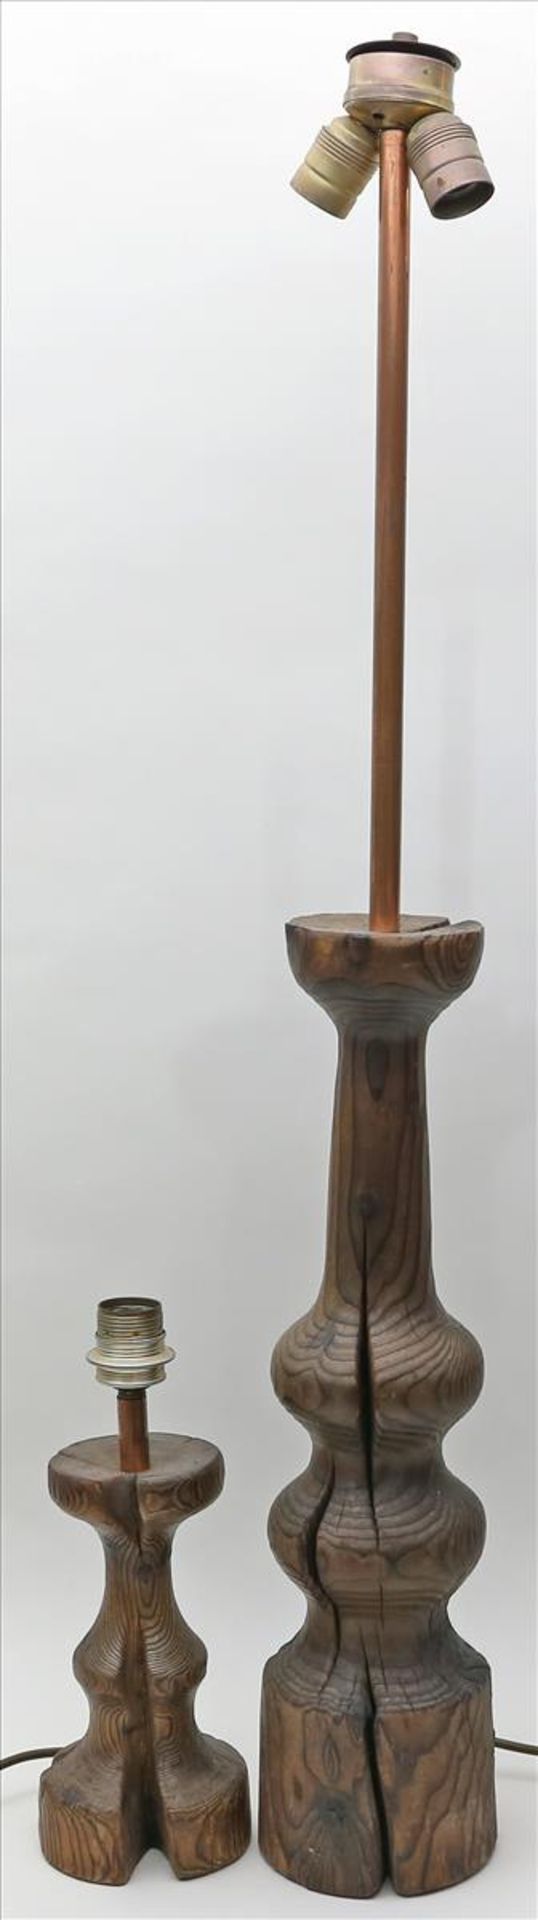 Tisch- und Stehleuchte, ein- bzw. 2-flammig.Langer Sockel aus Holz sowie Kupferrohr. Alters- und